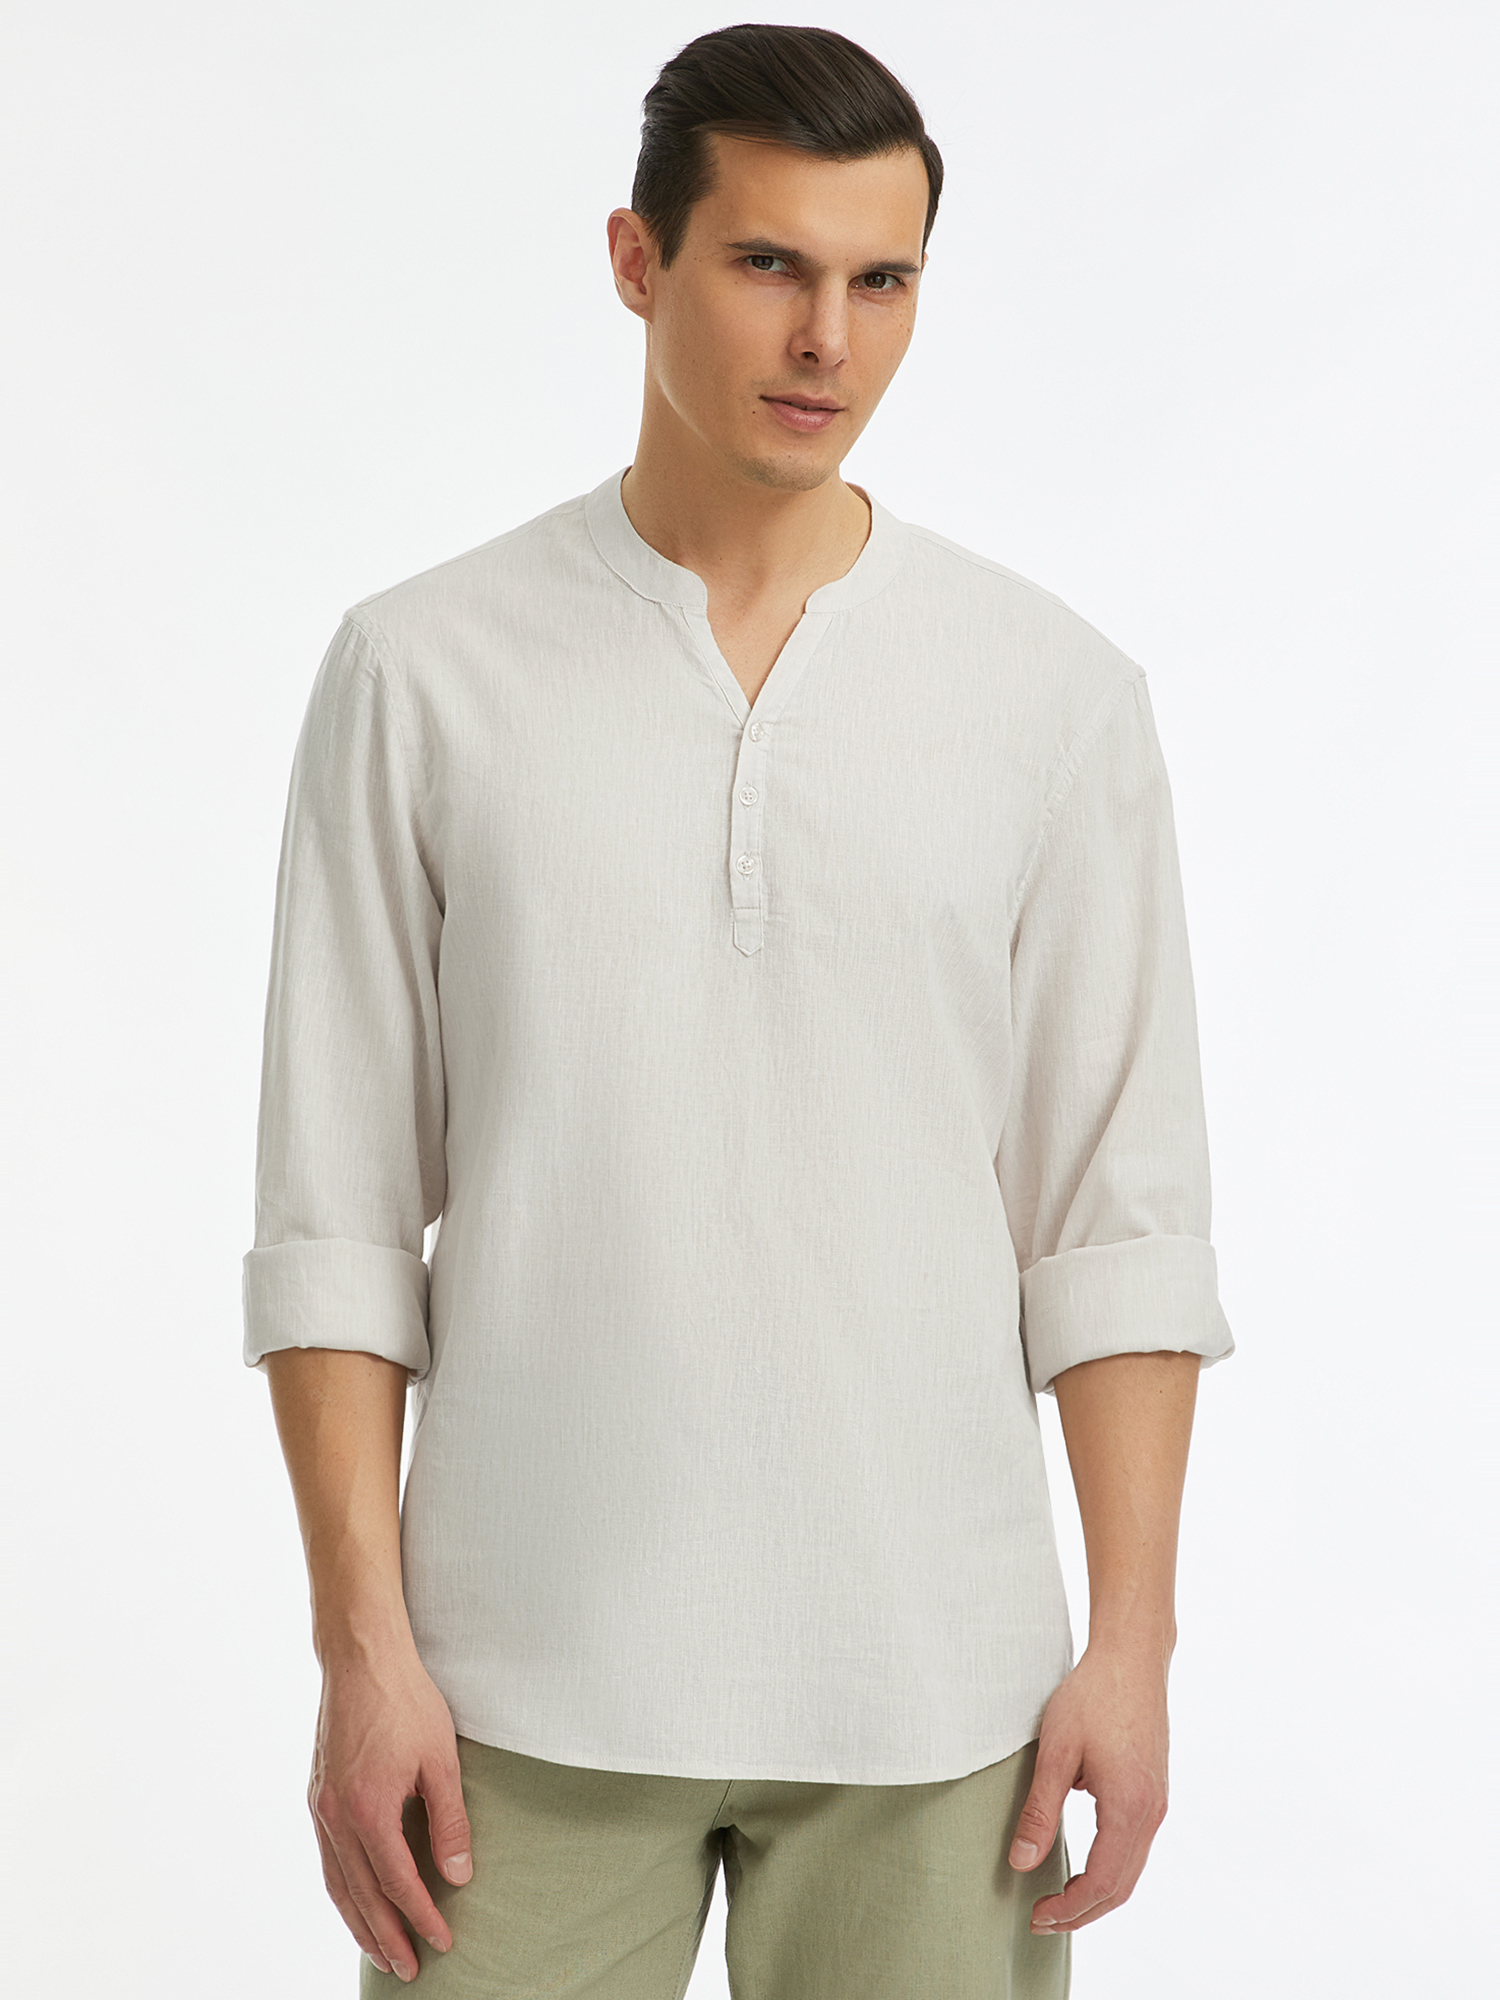 Рубашка мужская oodji 3B320002M-5 белая XL